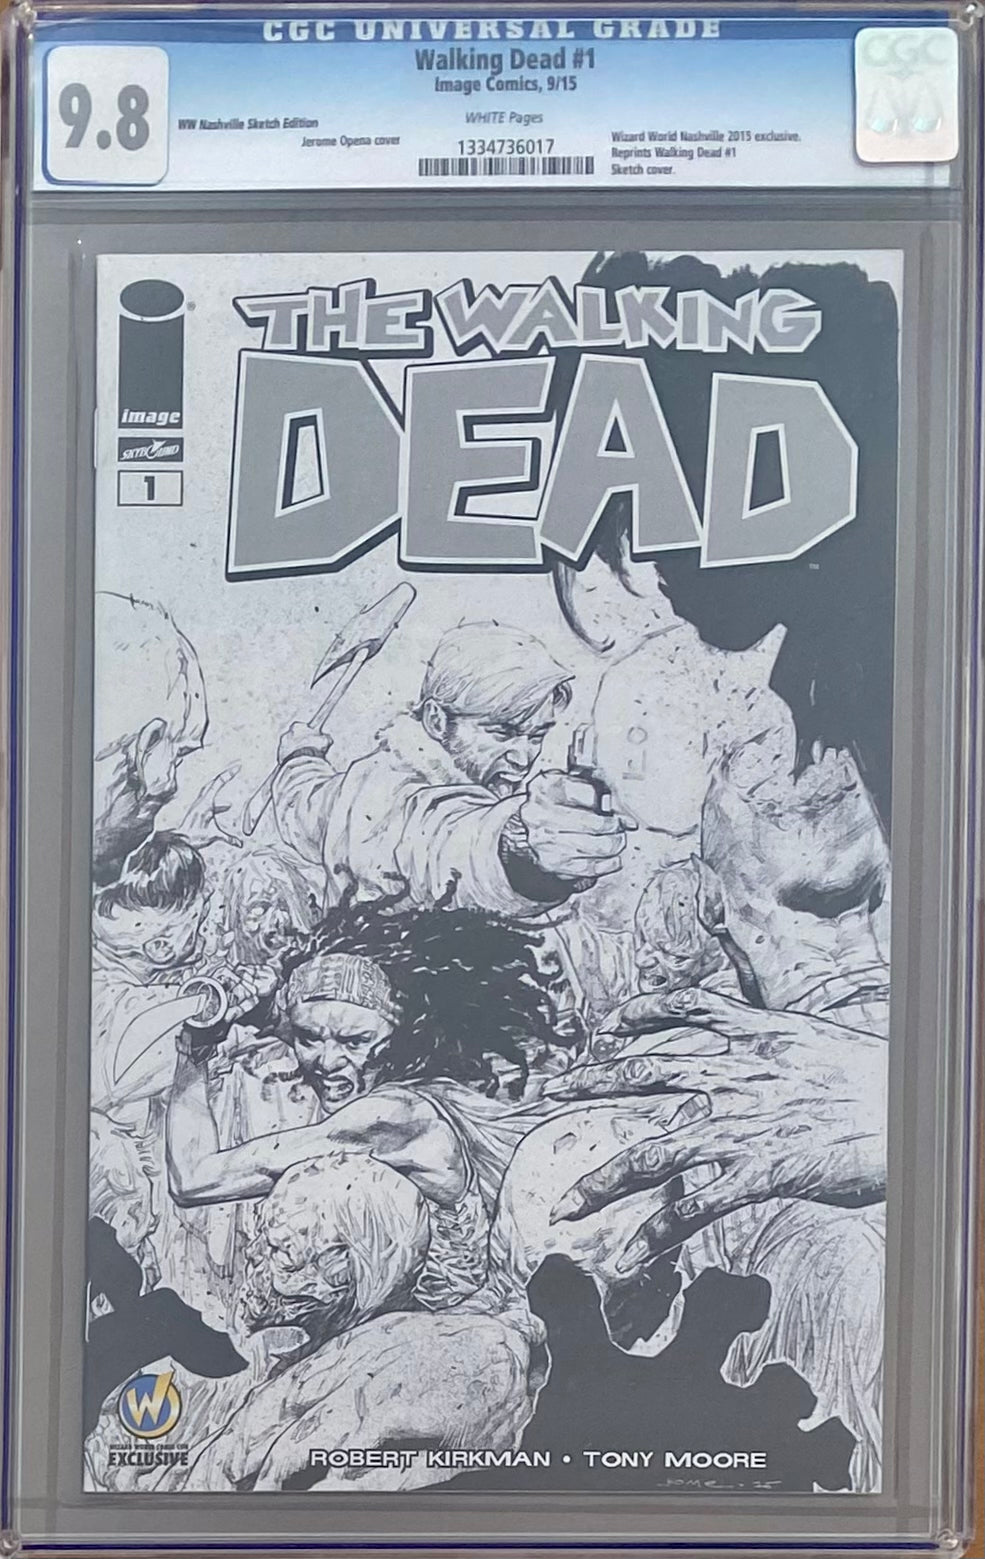 Walking Dead #1 Wizard World Nashville Sketch Edition Variant CGC 9.8